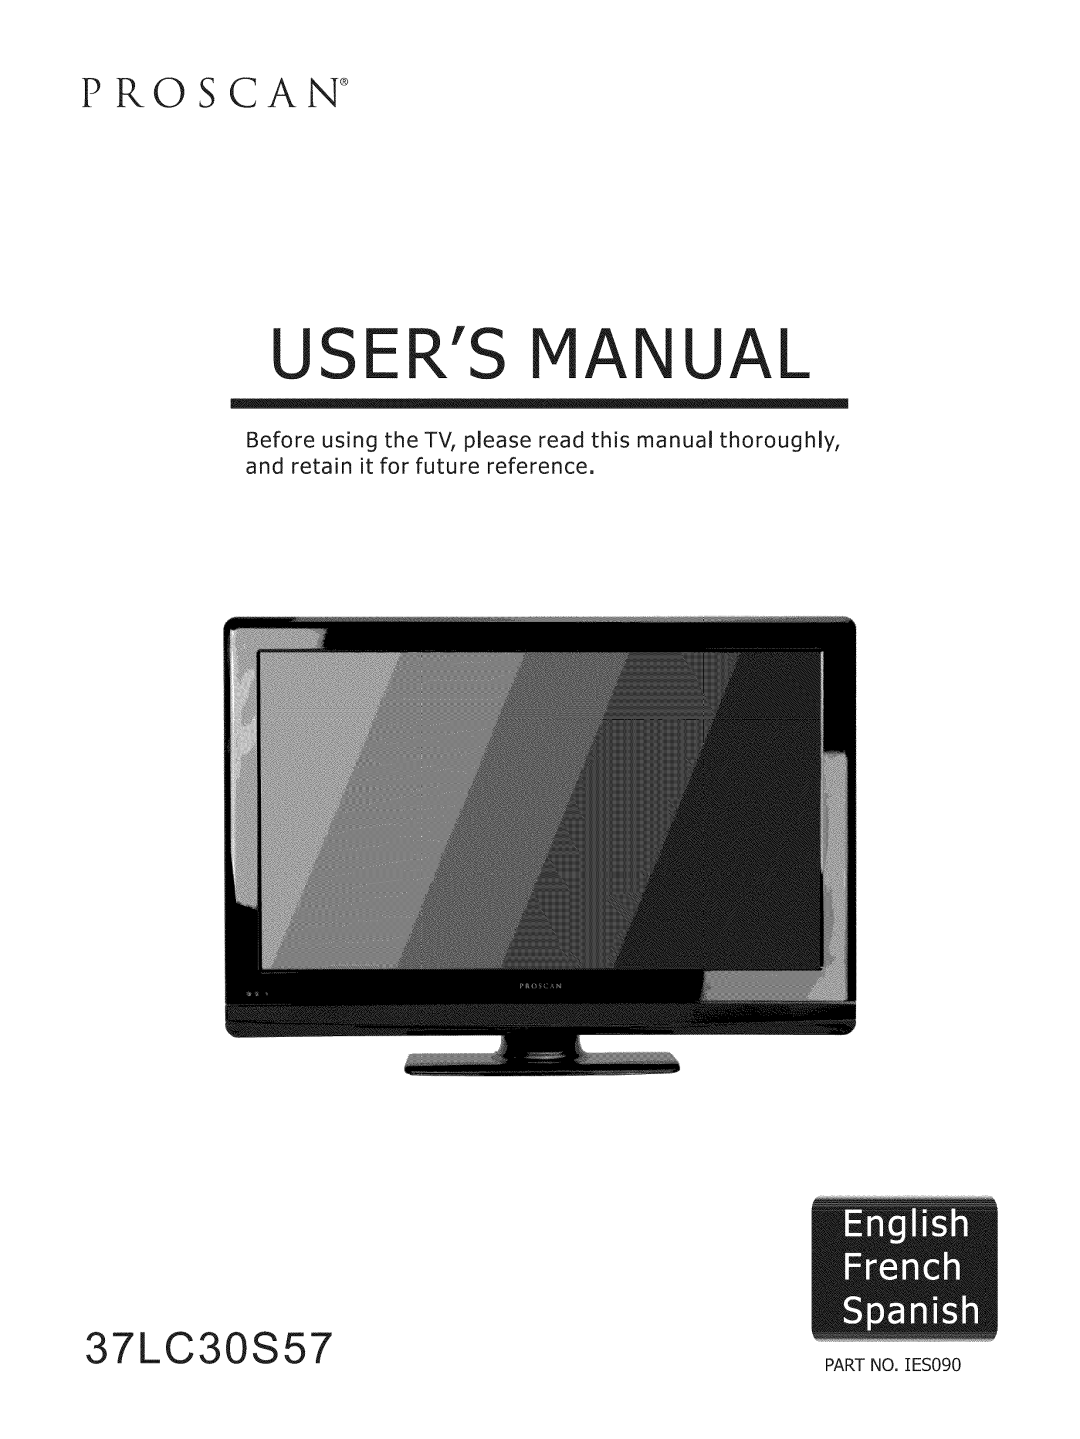 ProScan 37LC30S57 user manual Usersmanual, 3 7 LC 30 S 5, Proscan, o-.,oo 